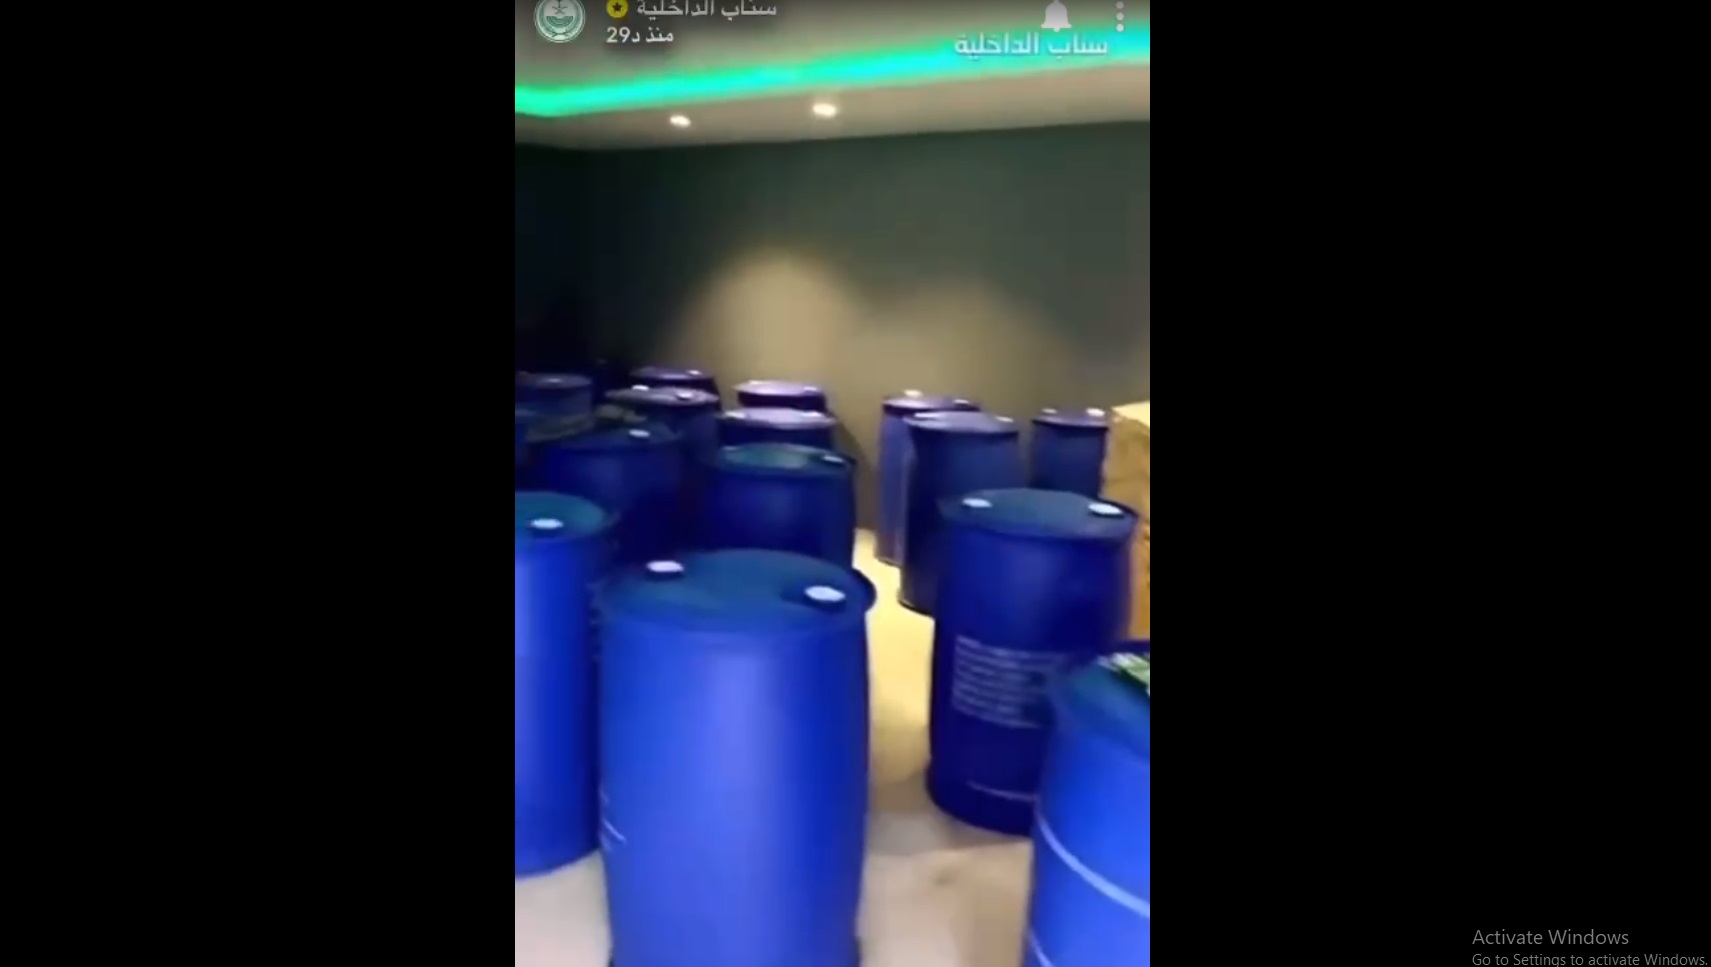 ضبط مصنعين للخمور بداخل إحدى استراحات الرياض